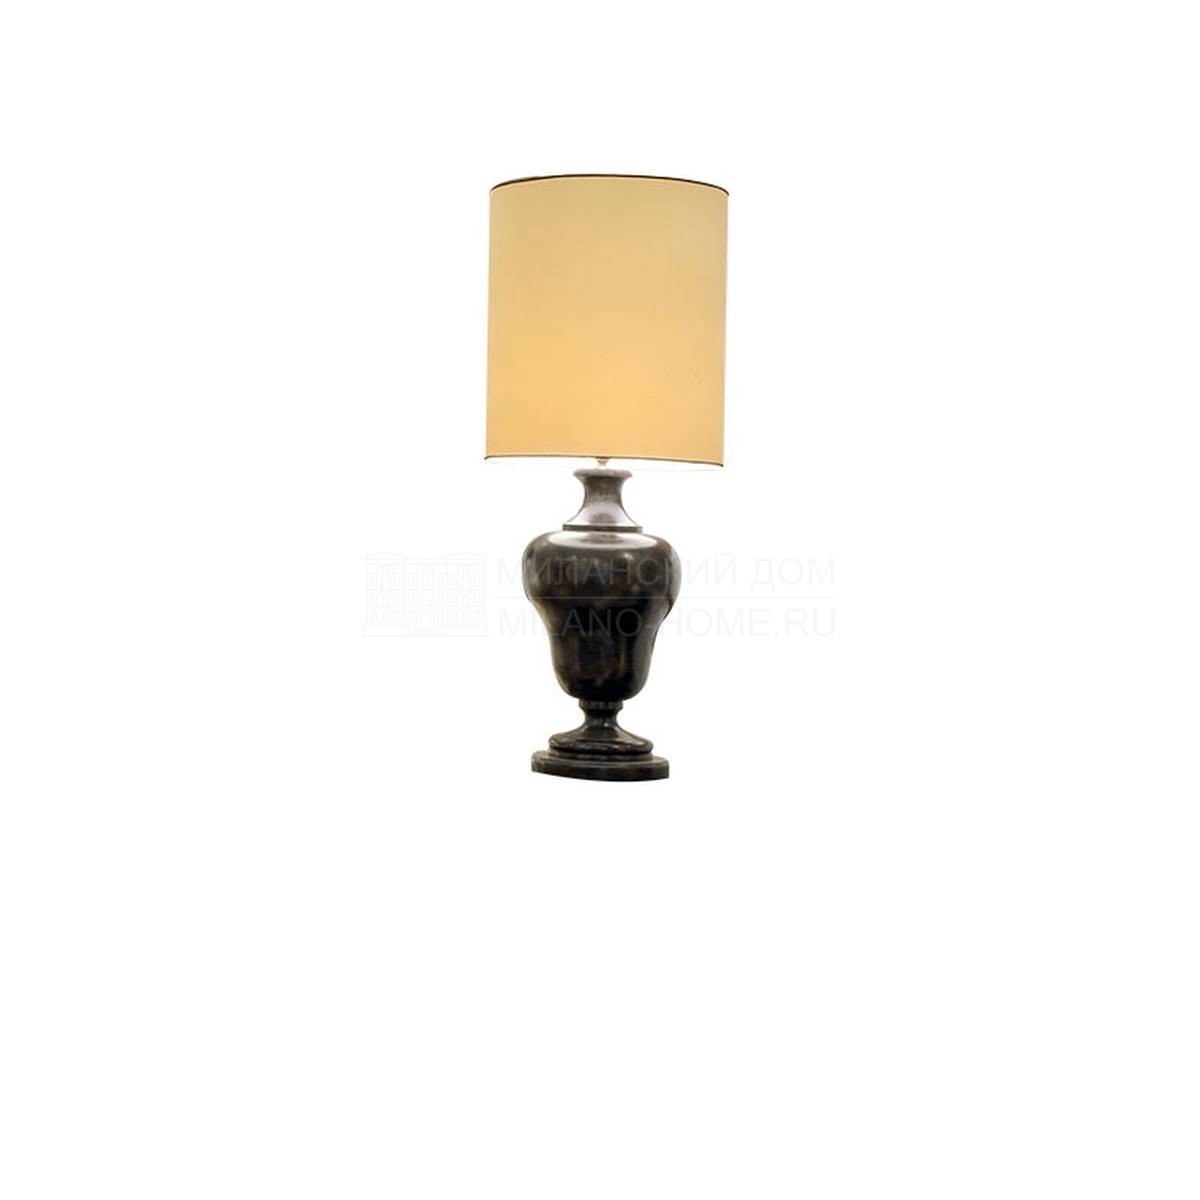 Настольная лампа Noe/ light из Италии фабрики SOFTHOUSE